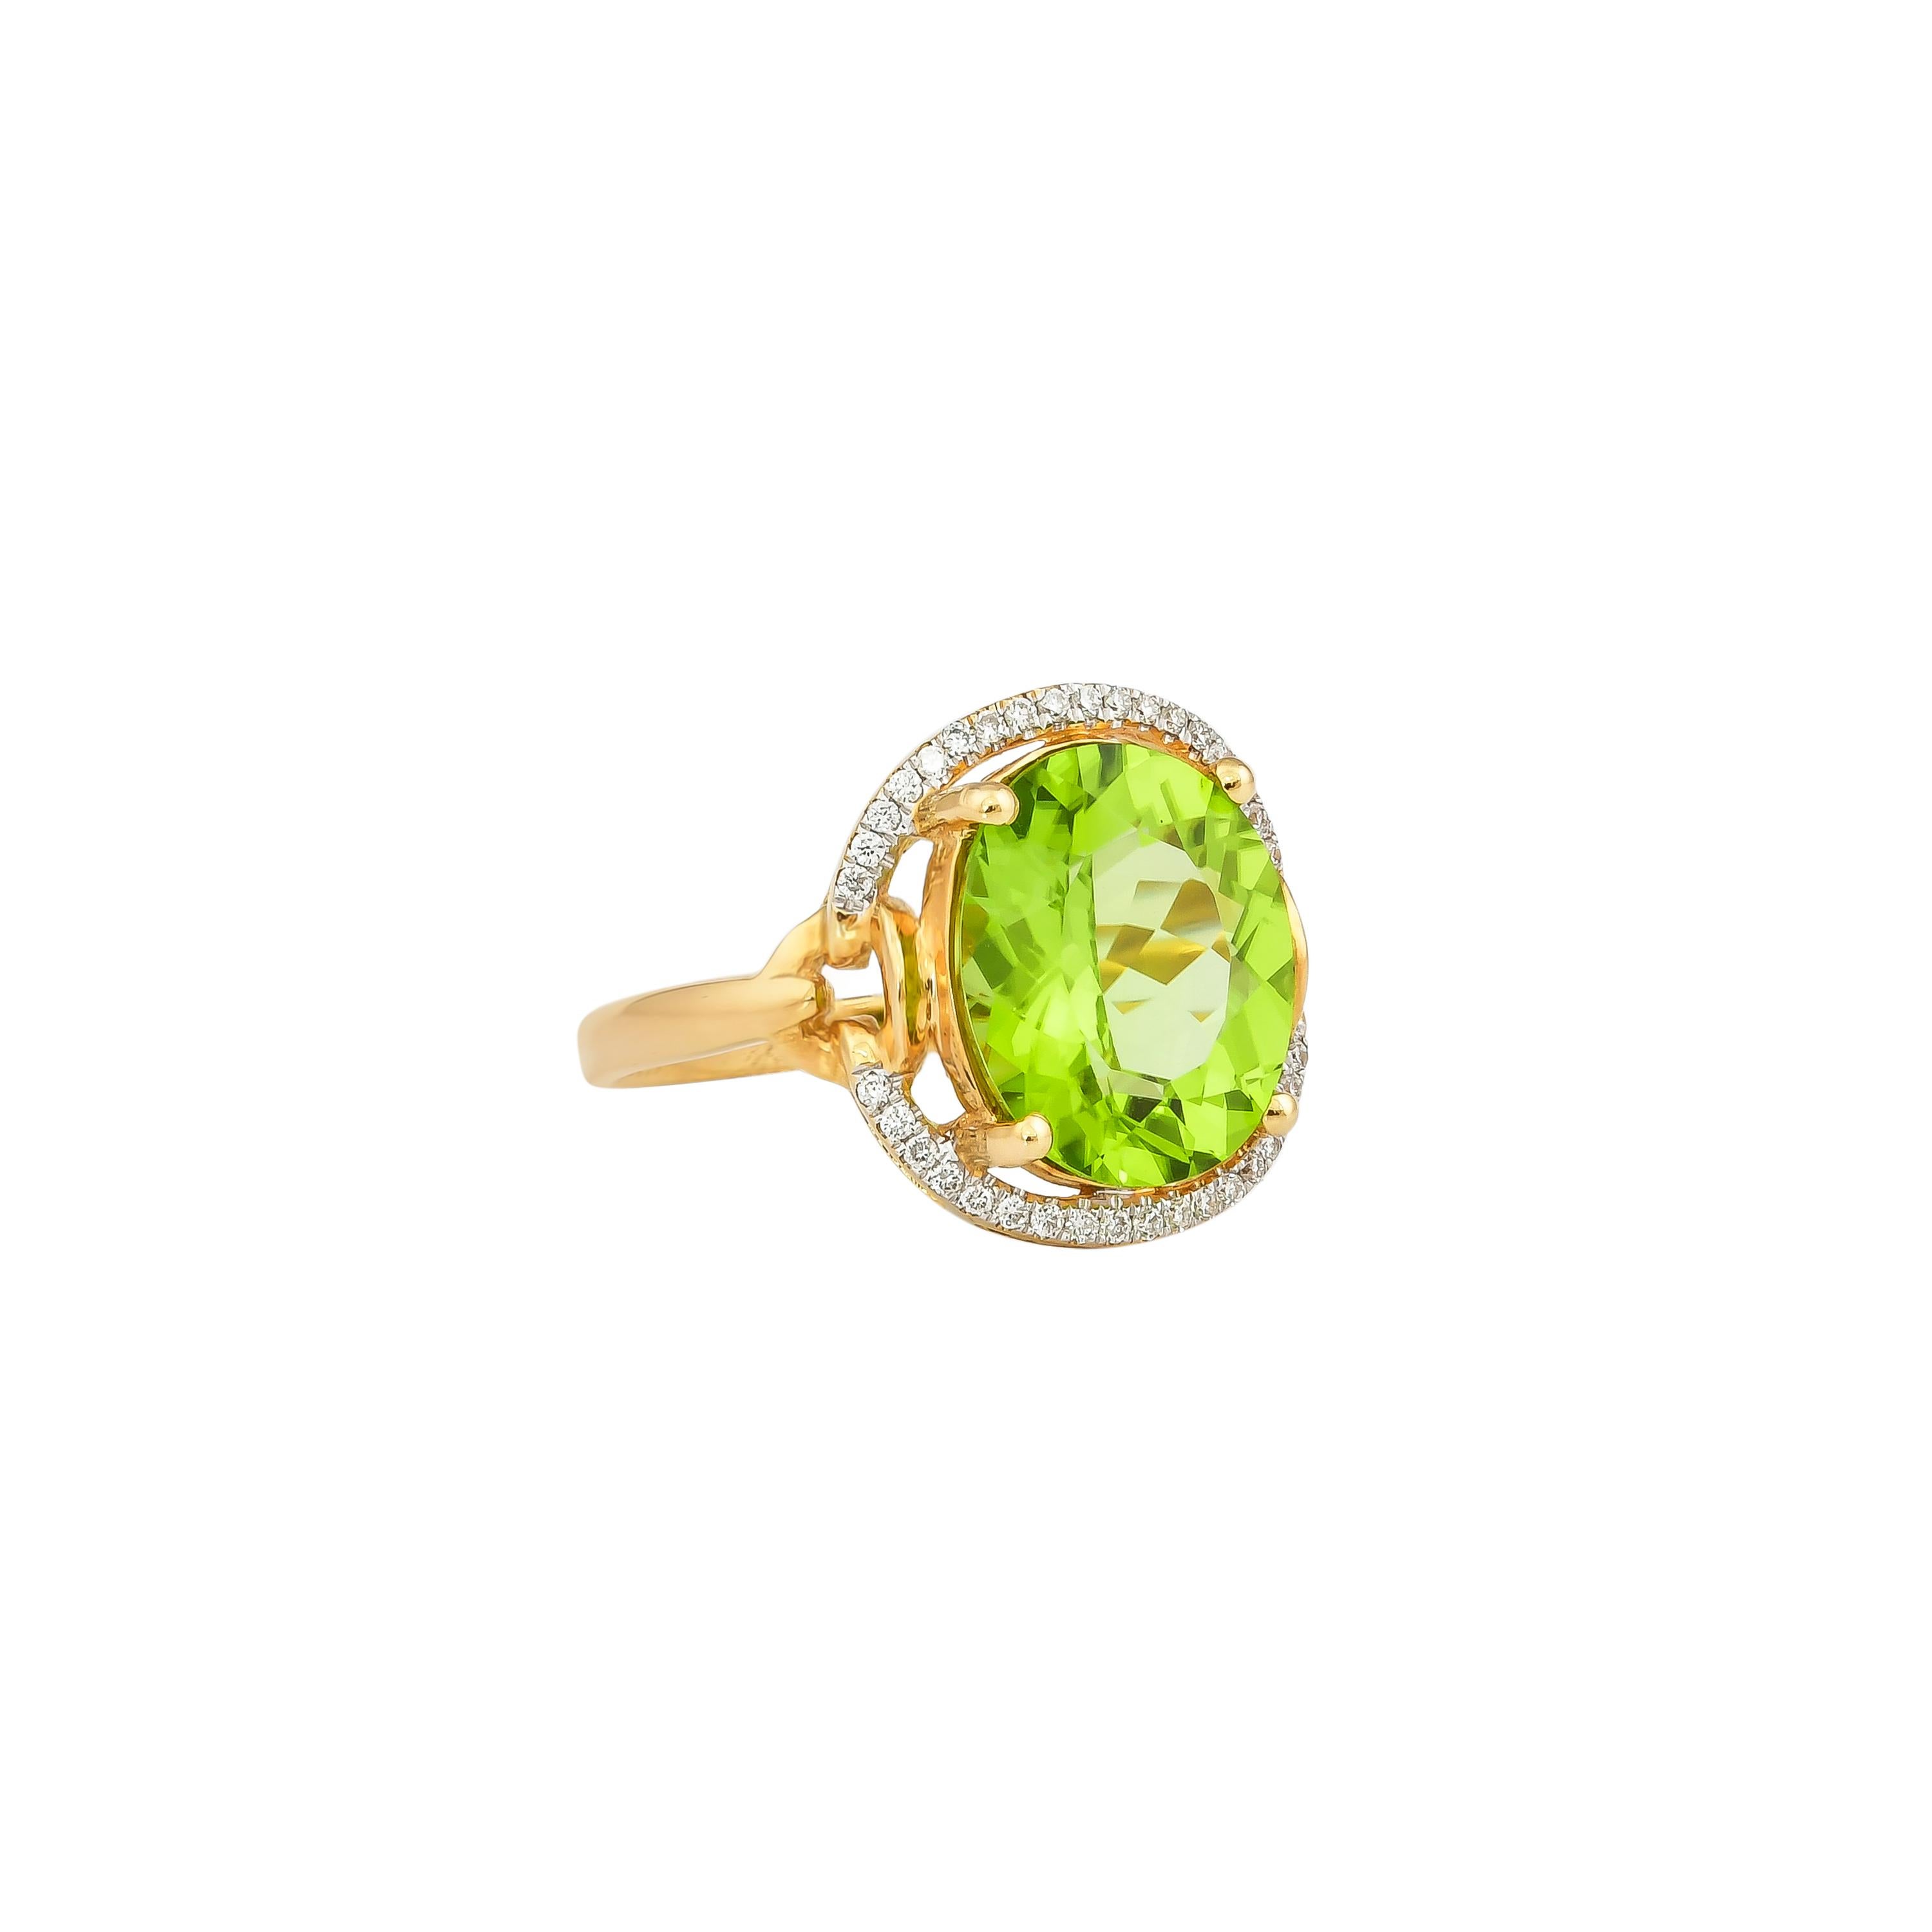 Diese Kollektion bietet eine Reihe von hübschen Peridot-Ringen! Die mit Diamanten besetzten Ringe sind aus Gelbgold gefertigt und bieten einen lebendigen und frischen Look. 

Klassischer Peridot-Ring aus 18 Karat Gelbgold mit Diamanten. 

Peridot: